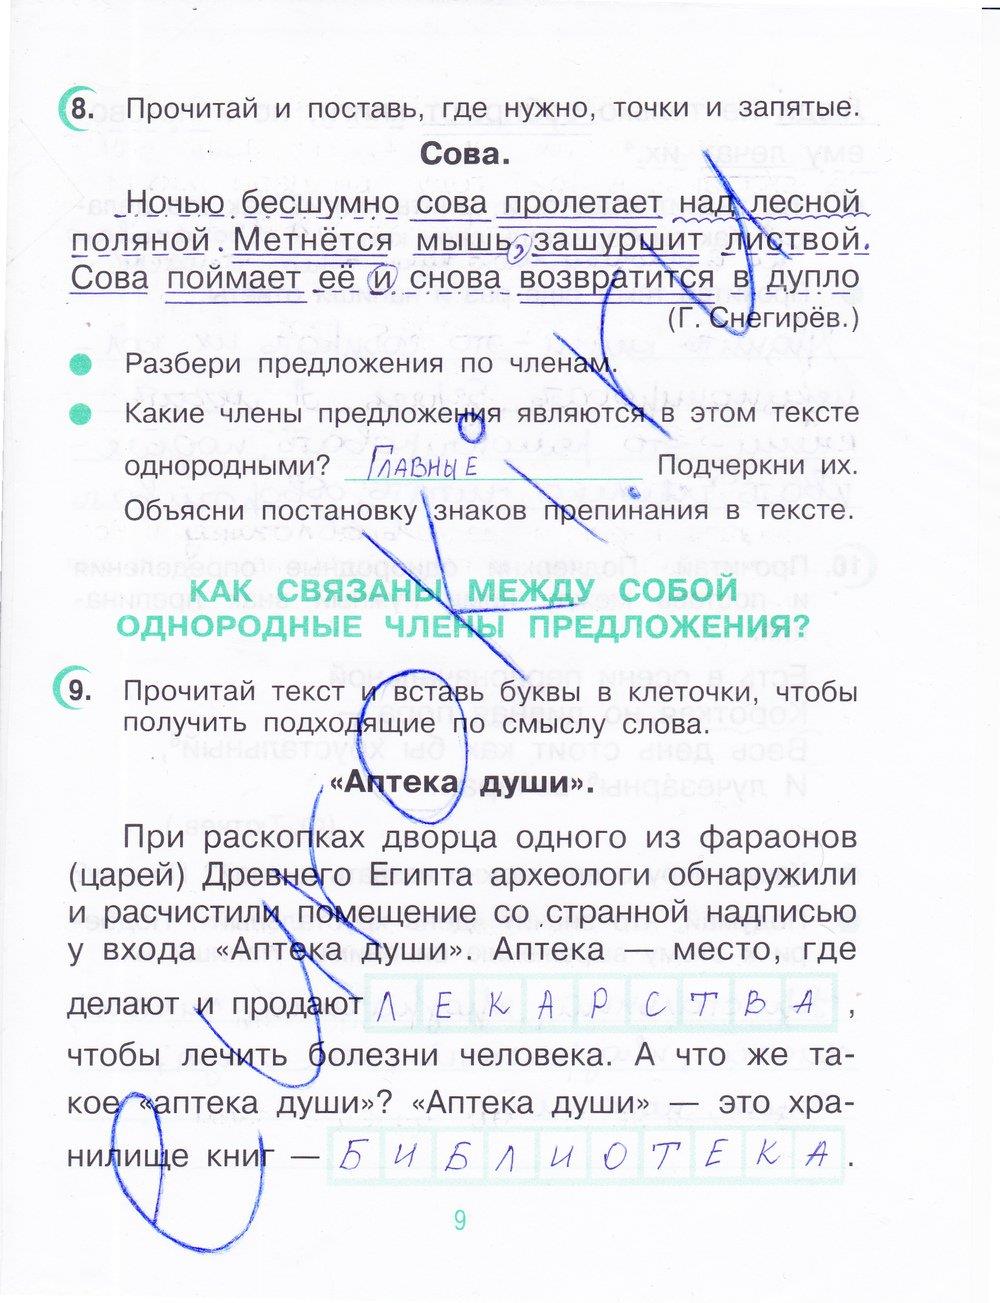 гдз 4 класс рабочая тетрадь часть 1 страница 9 русский язык Рамзаева, Савинкина